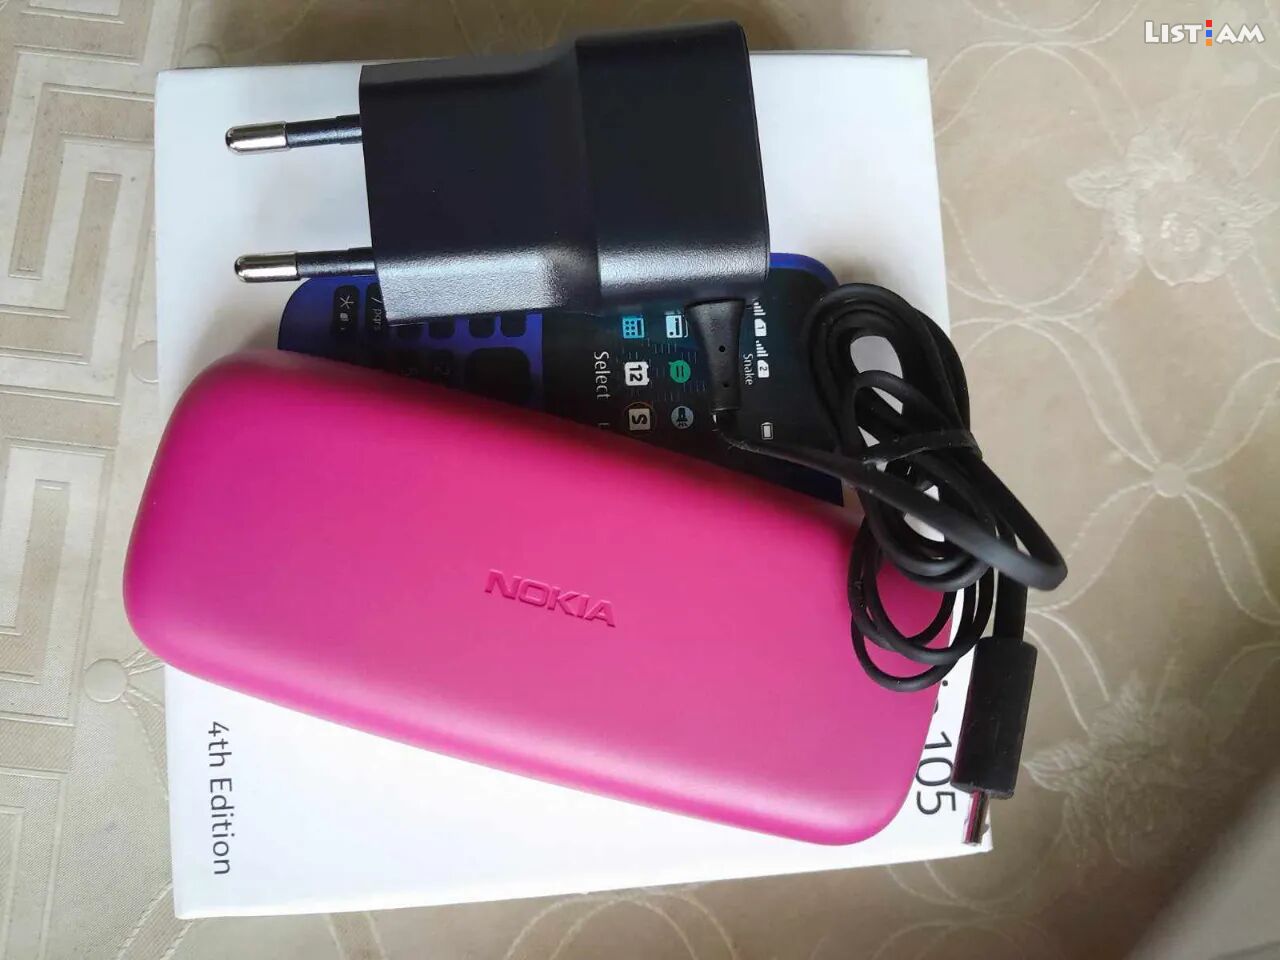 Nokia 105 (2022), <